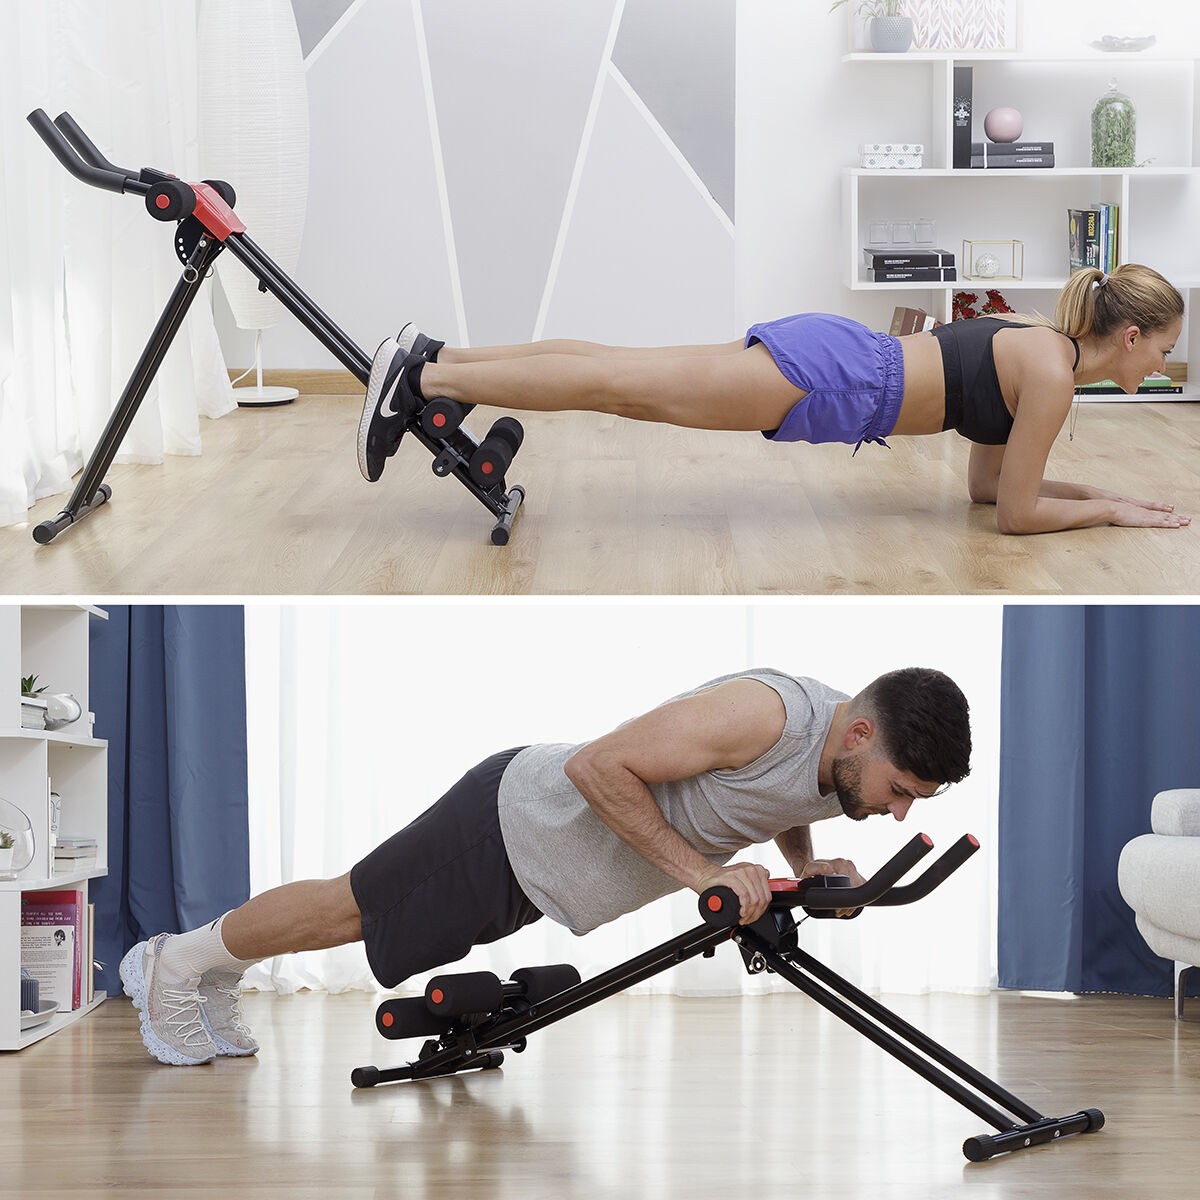 Planche Exercice Multifonction de Musculation - Idéal pour les pompes